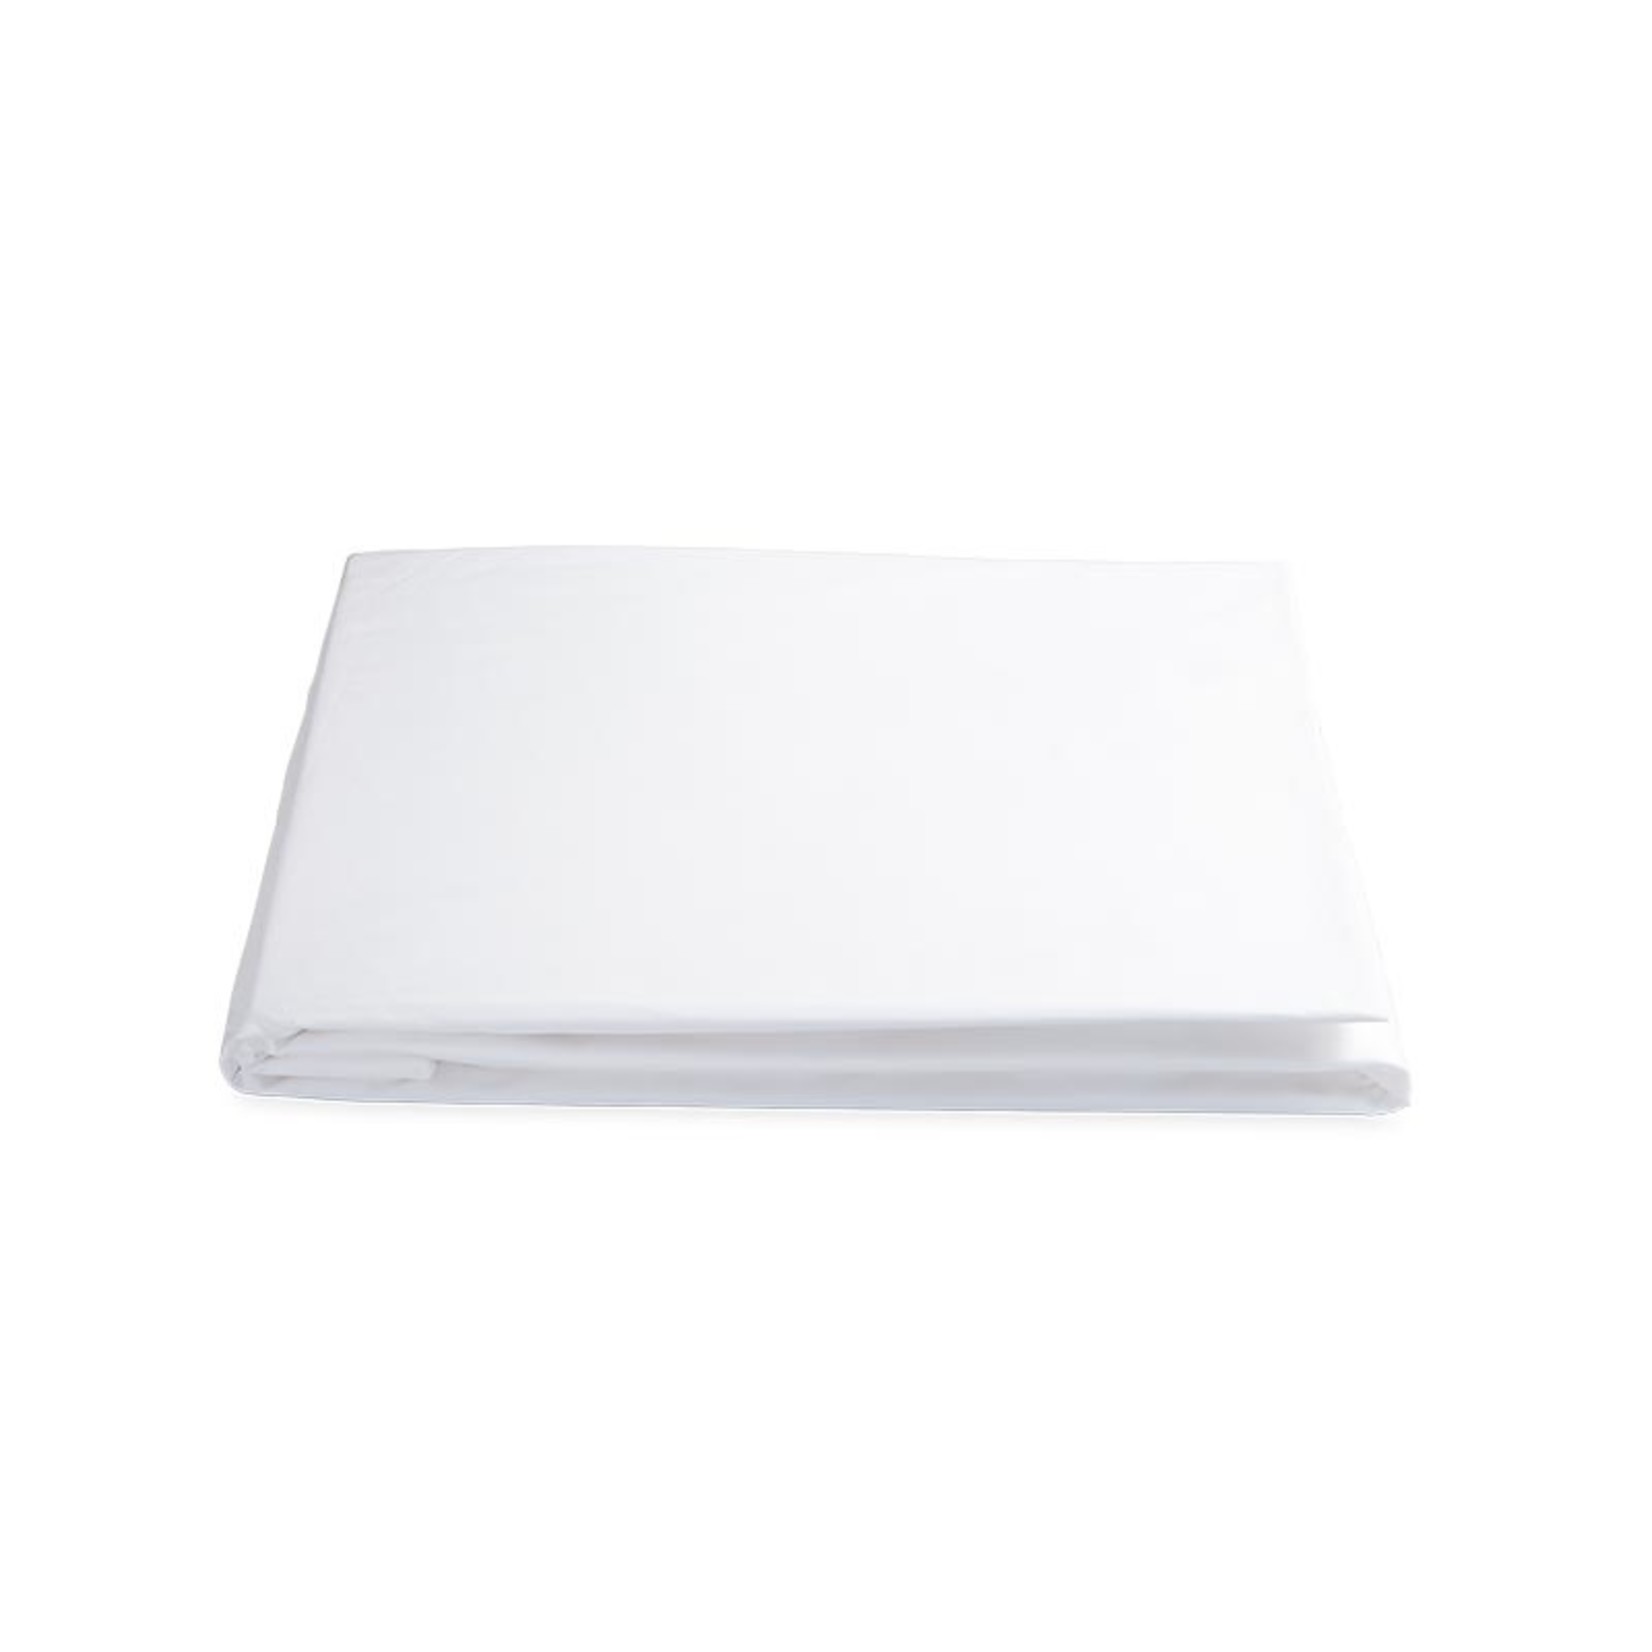 Matouk Sierra King Fitted Sheet- White